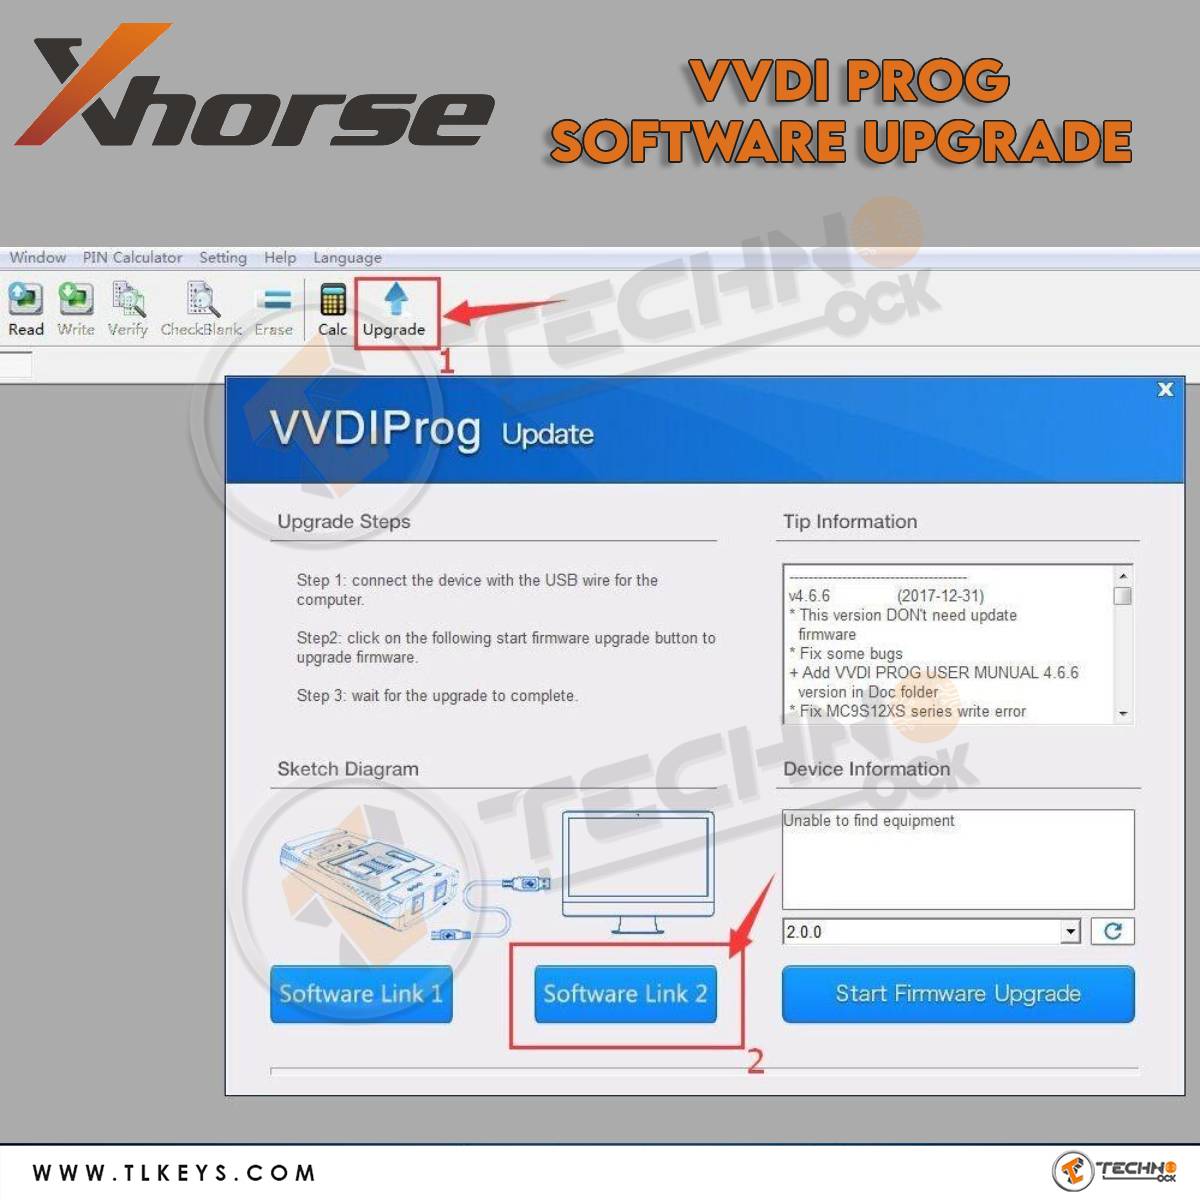  upgrade VVDI prog software